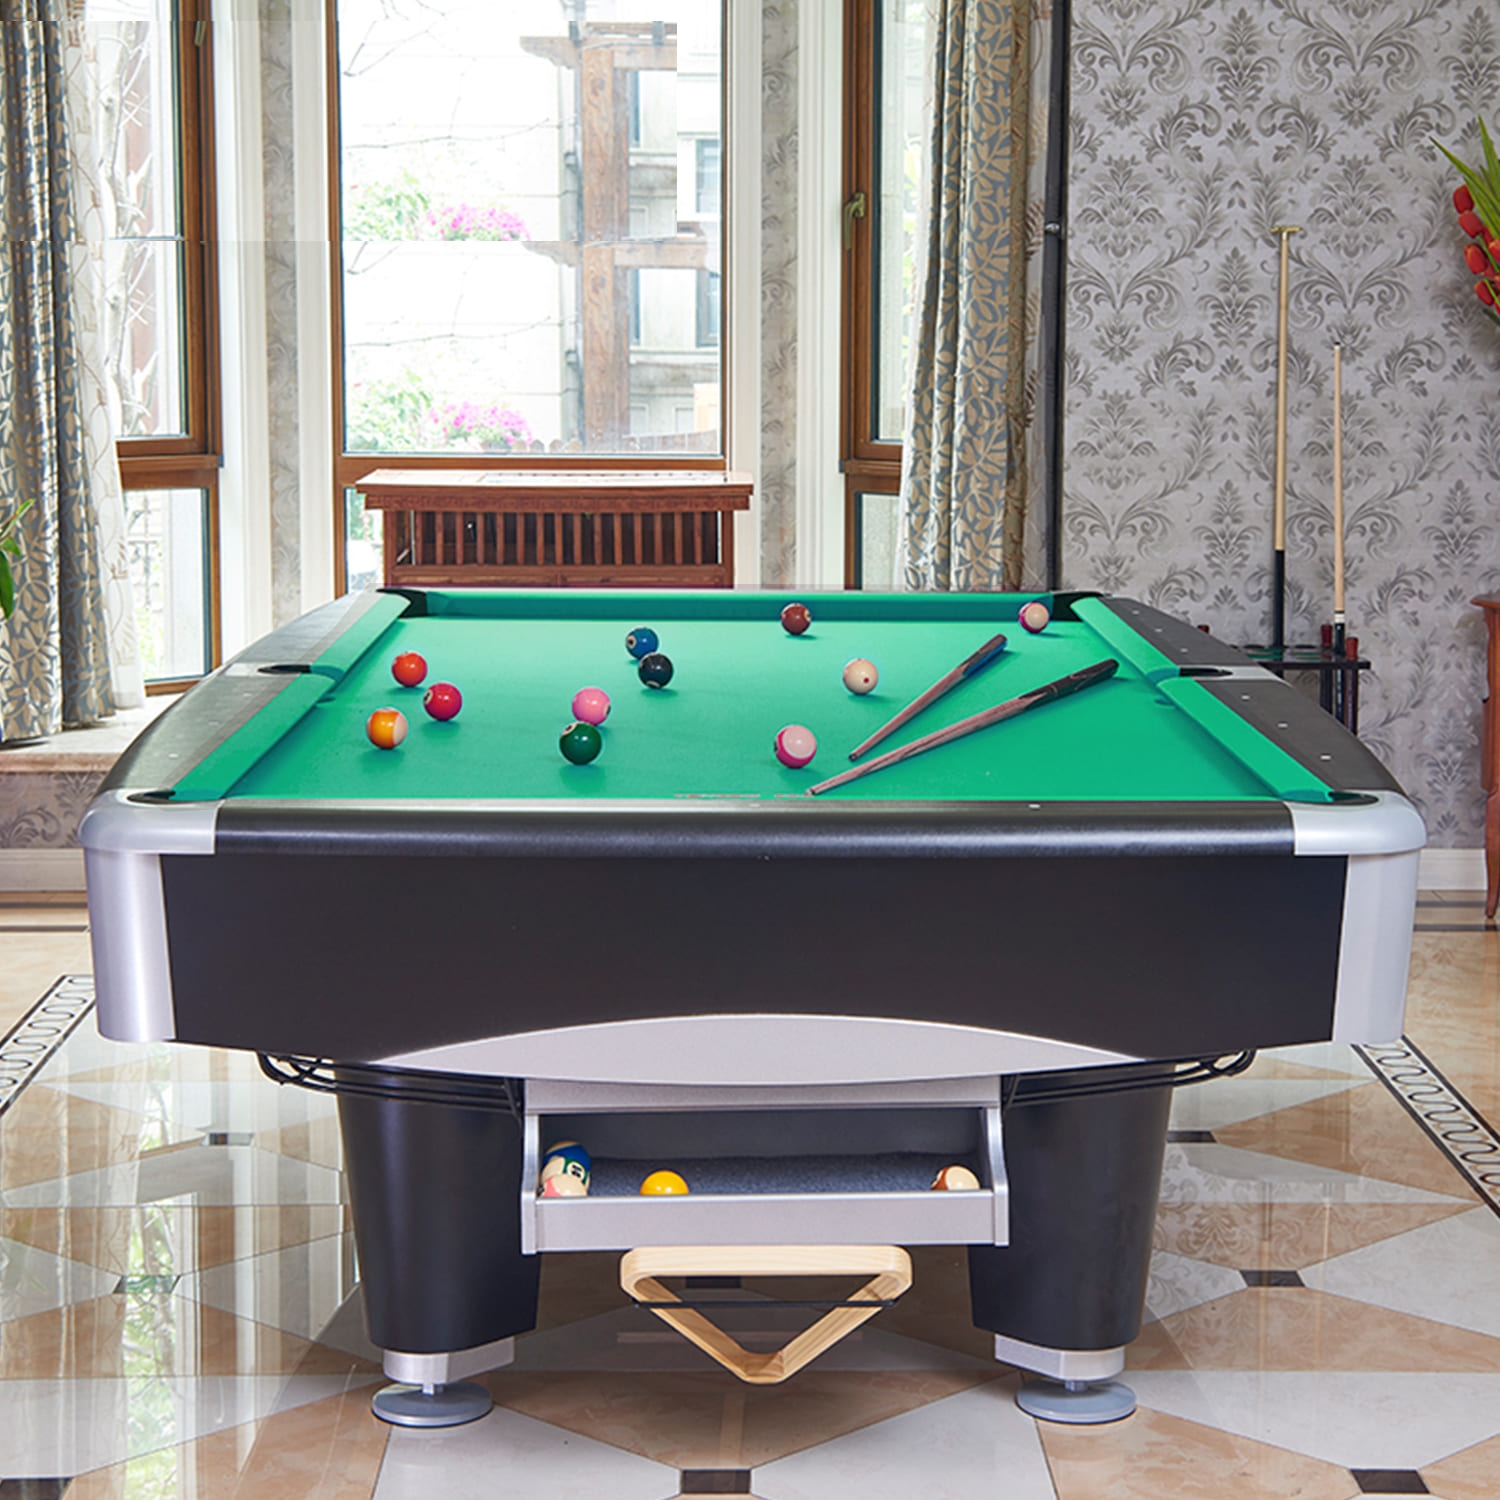 Billiard Pool Table 8 Feet | Marble Material